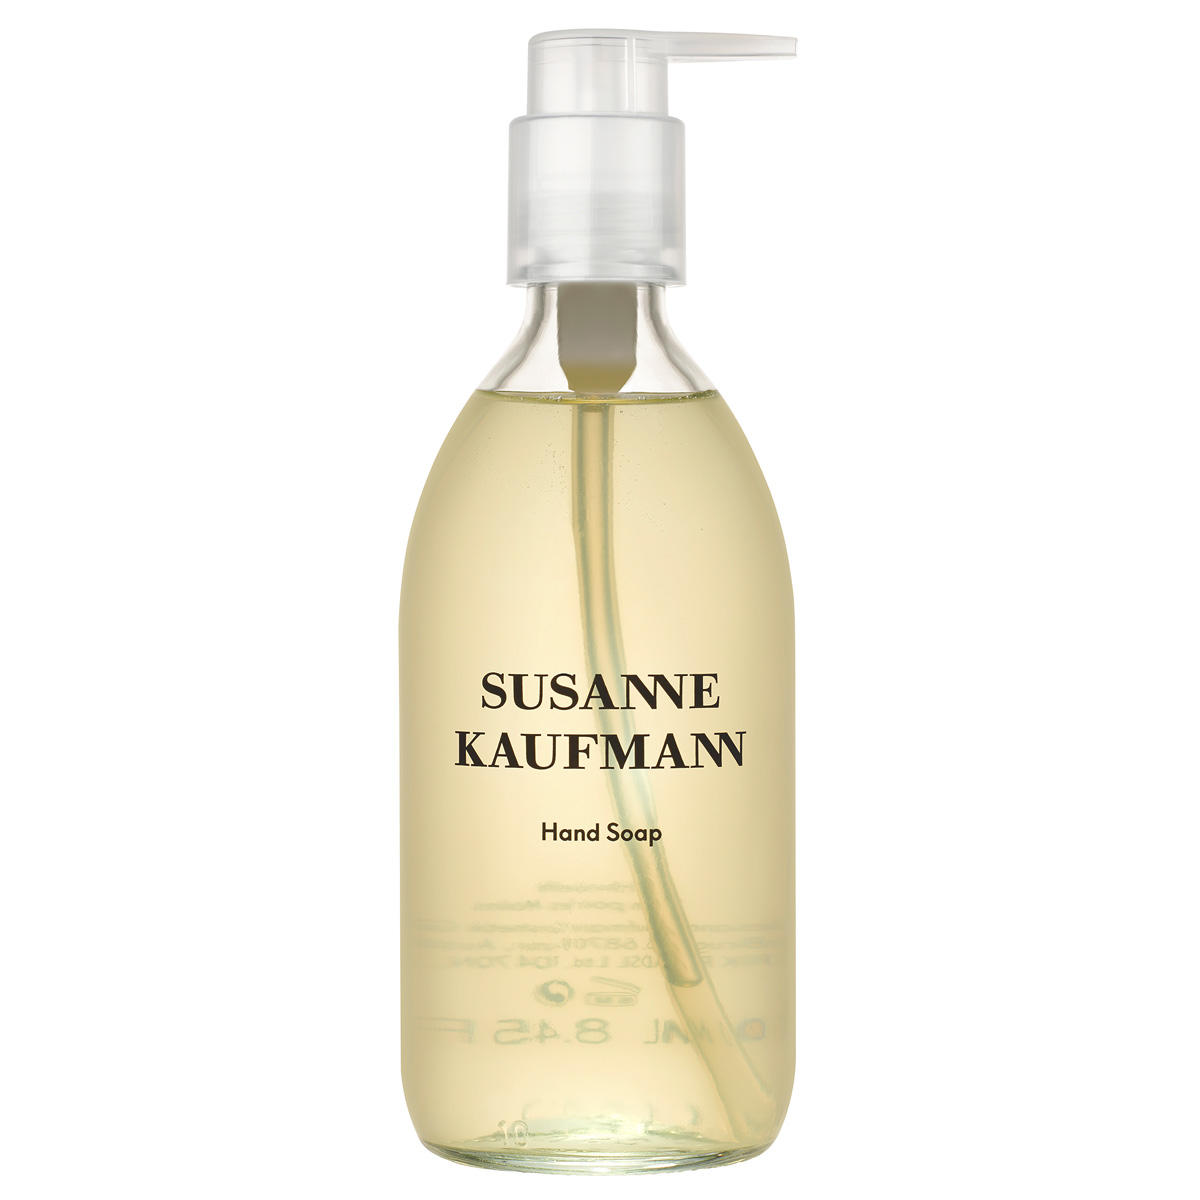 Susanne Kaufmann Handseife - Hand Soap 250 ml - 1